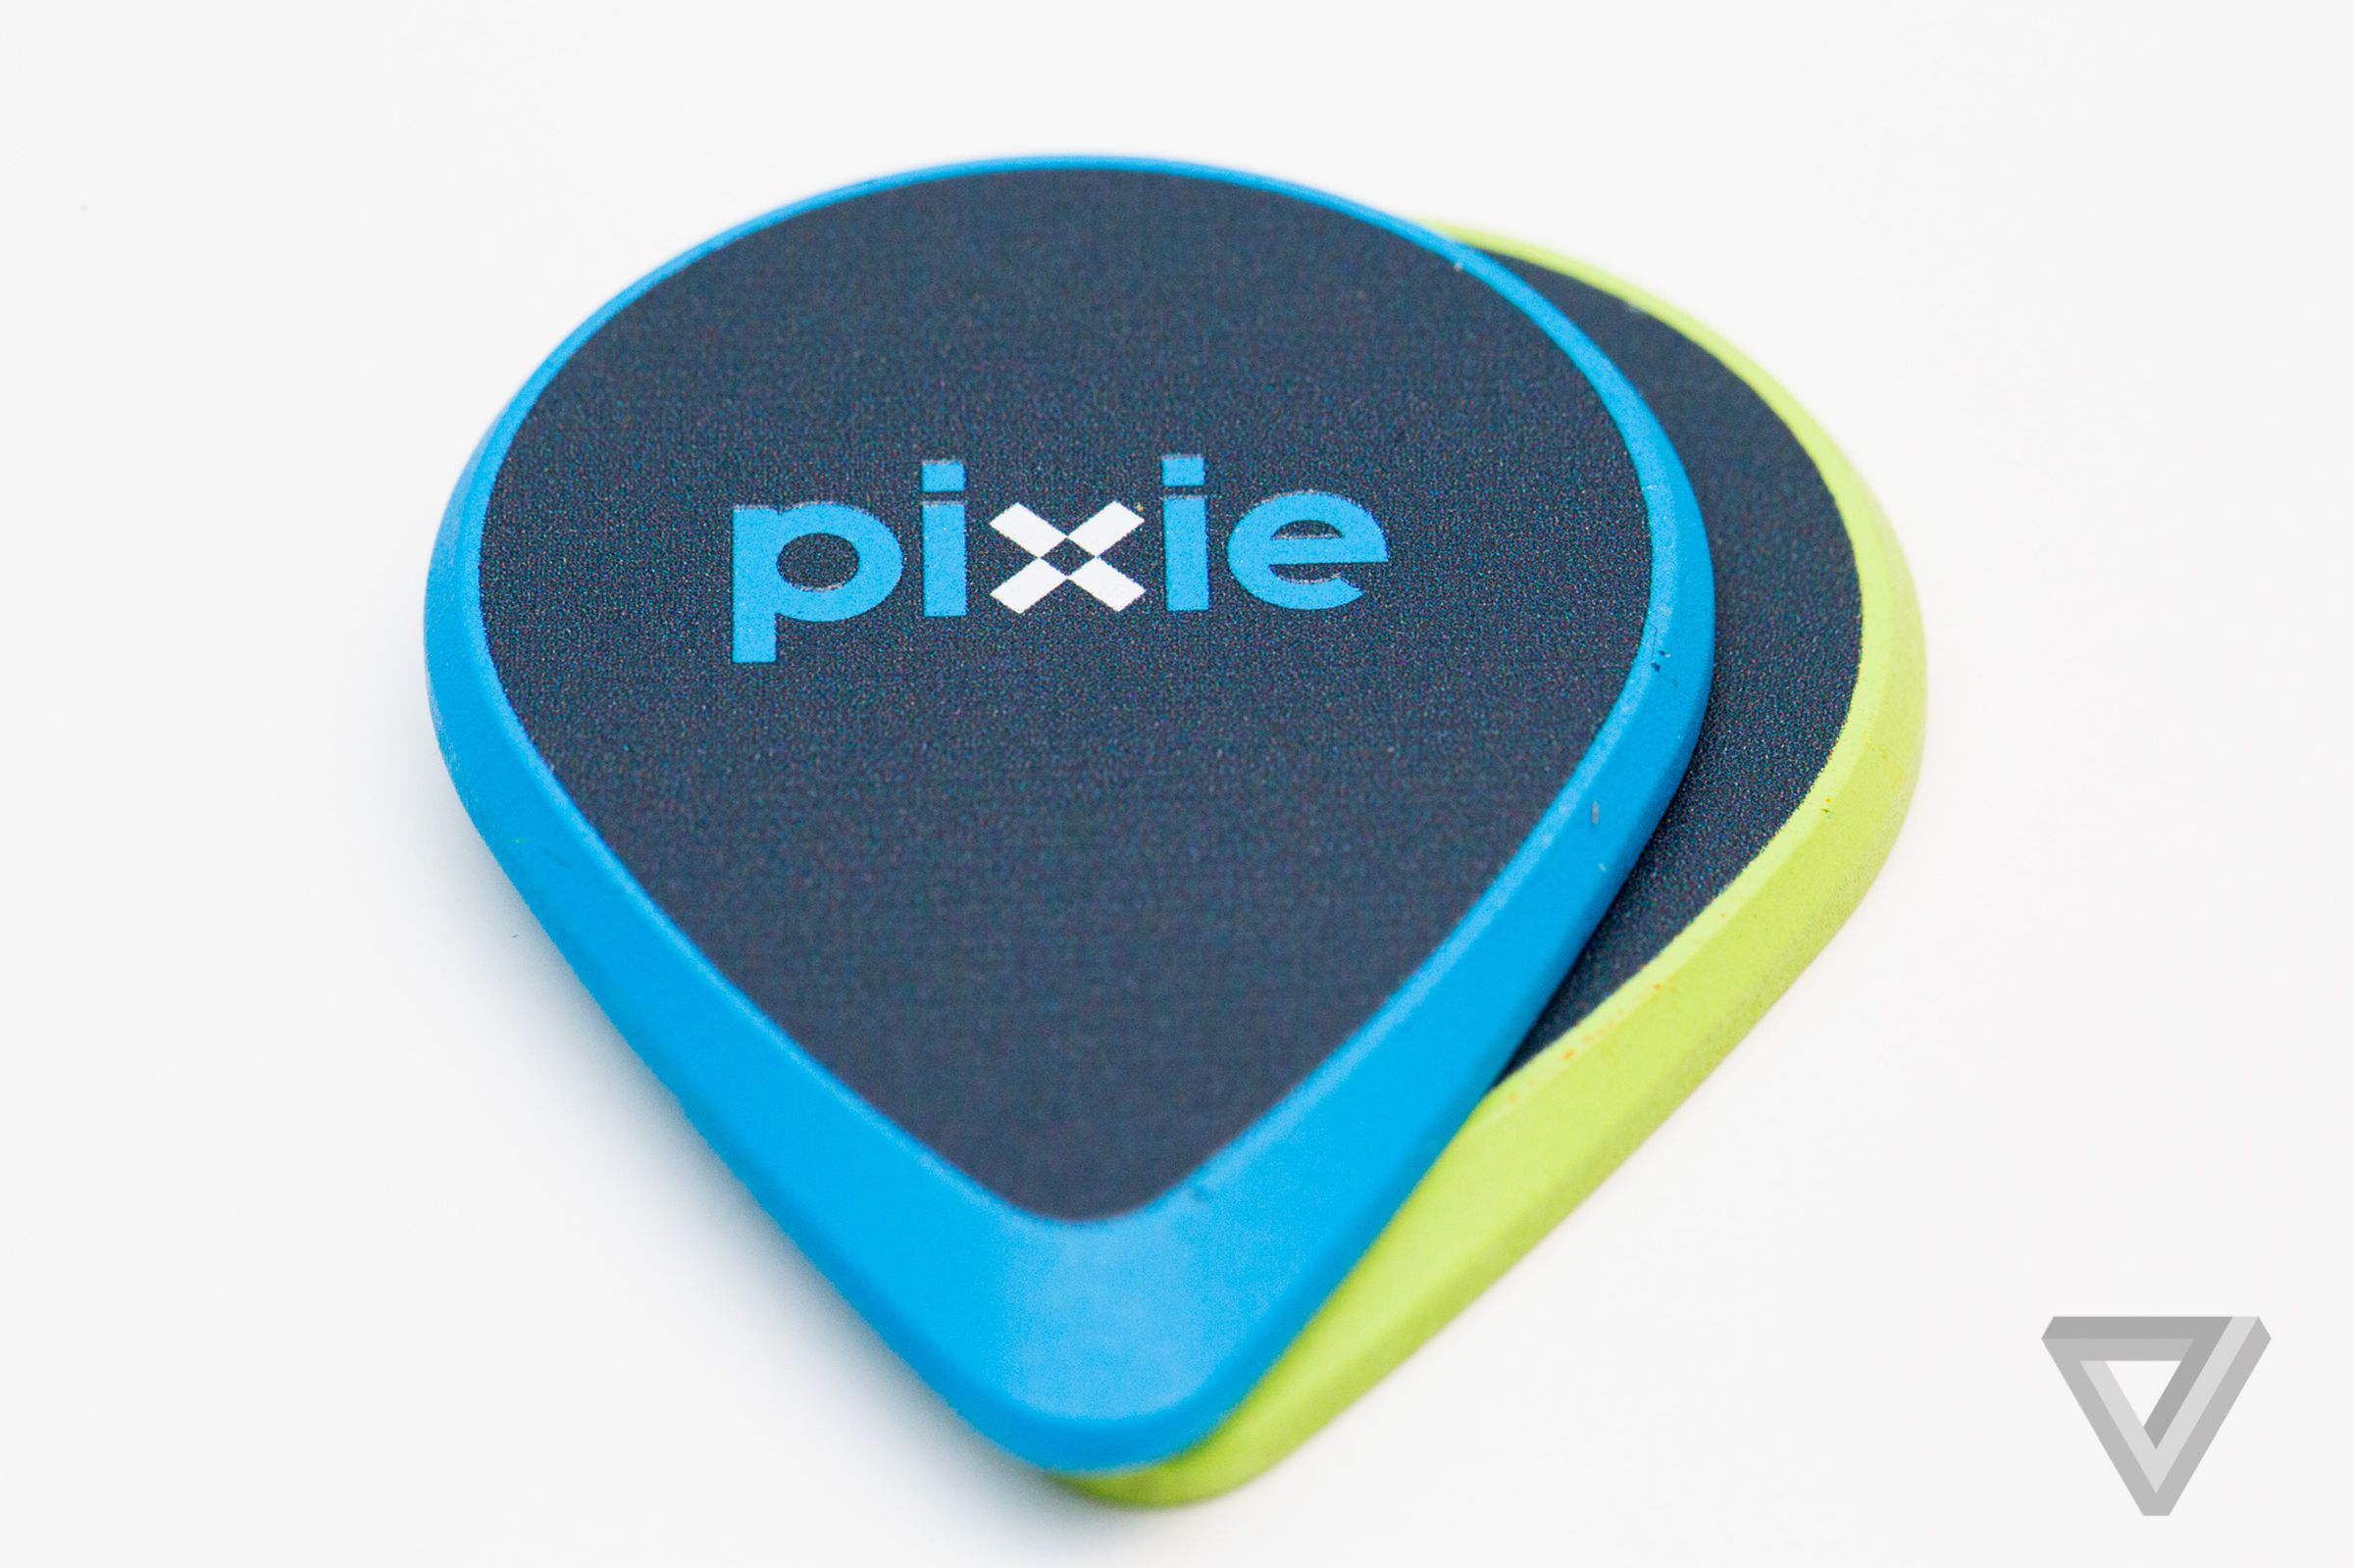 Pixie device photos